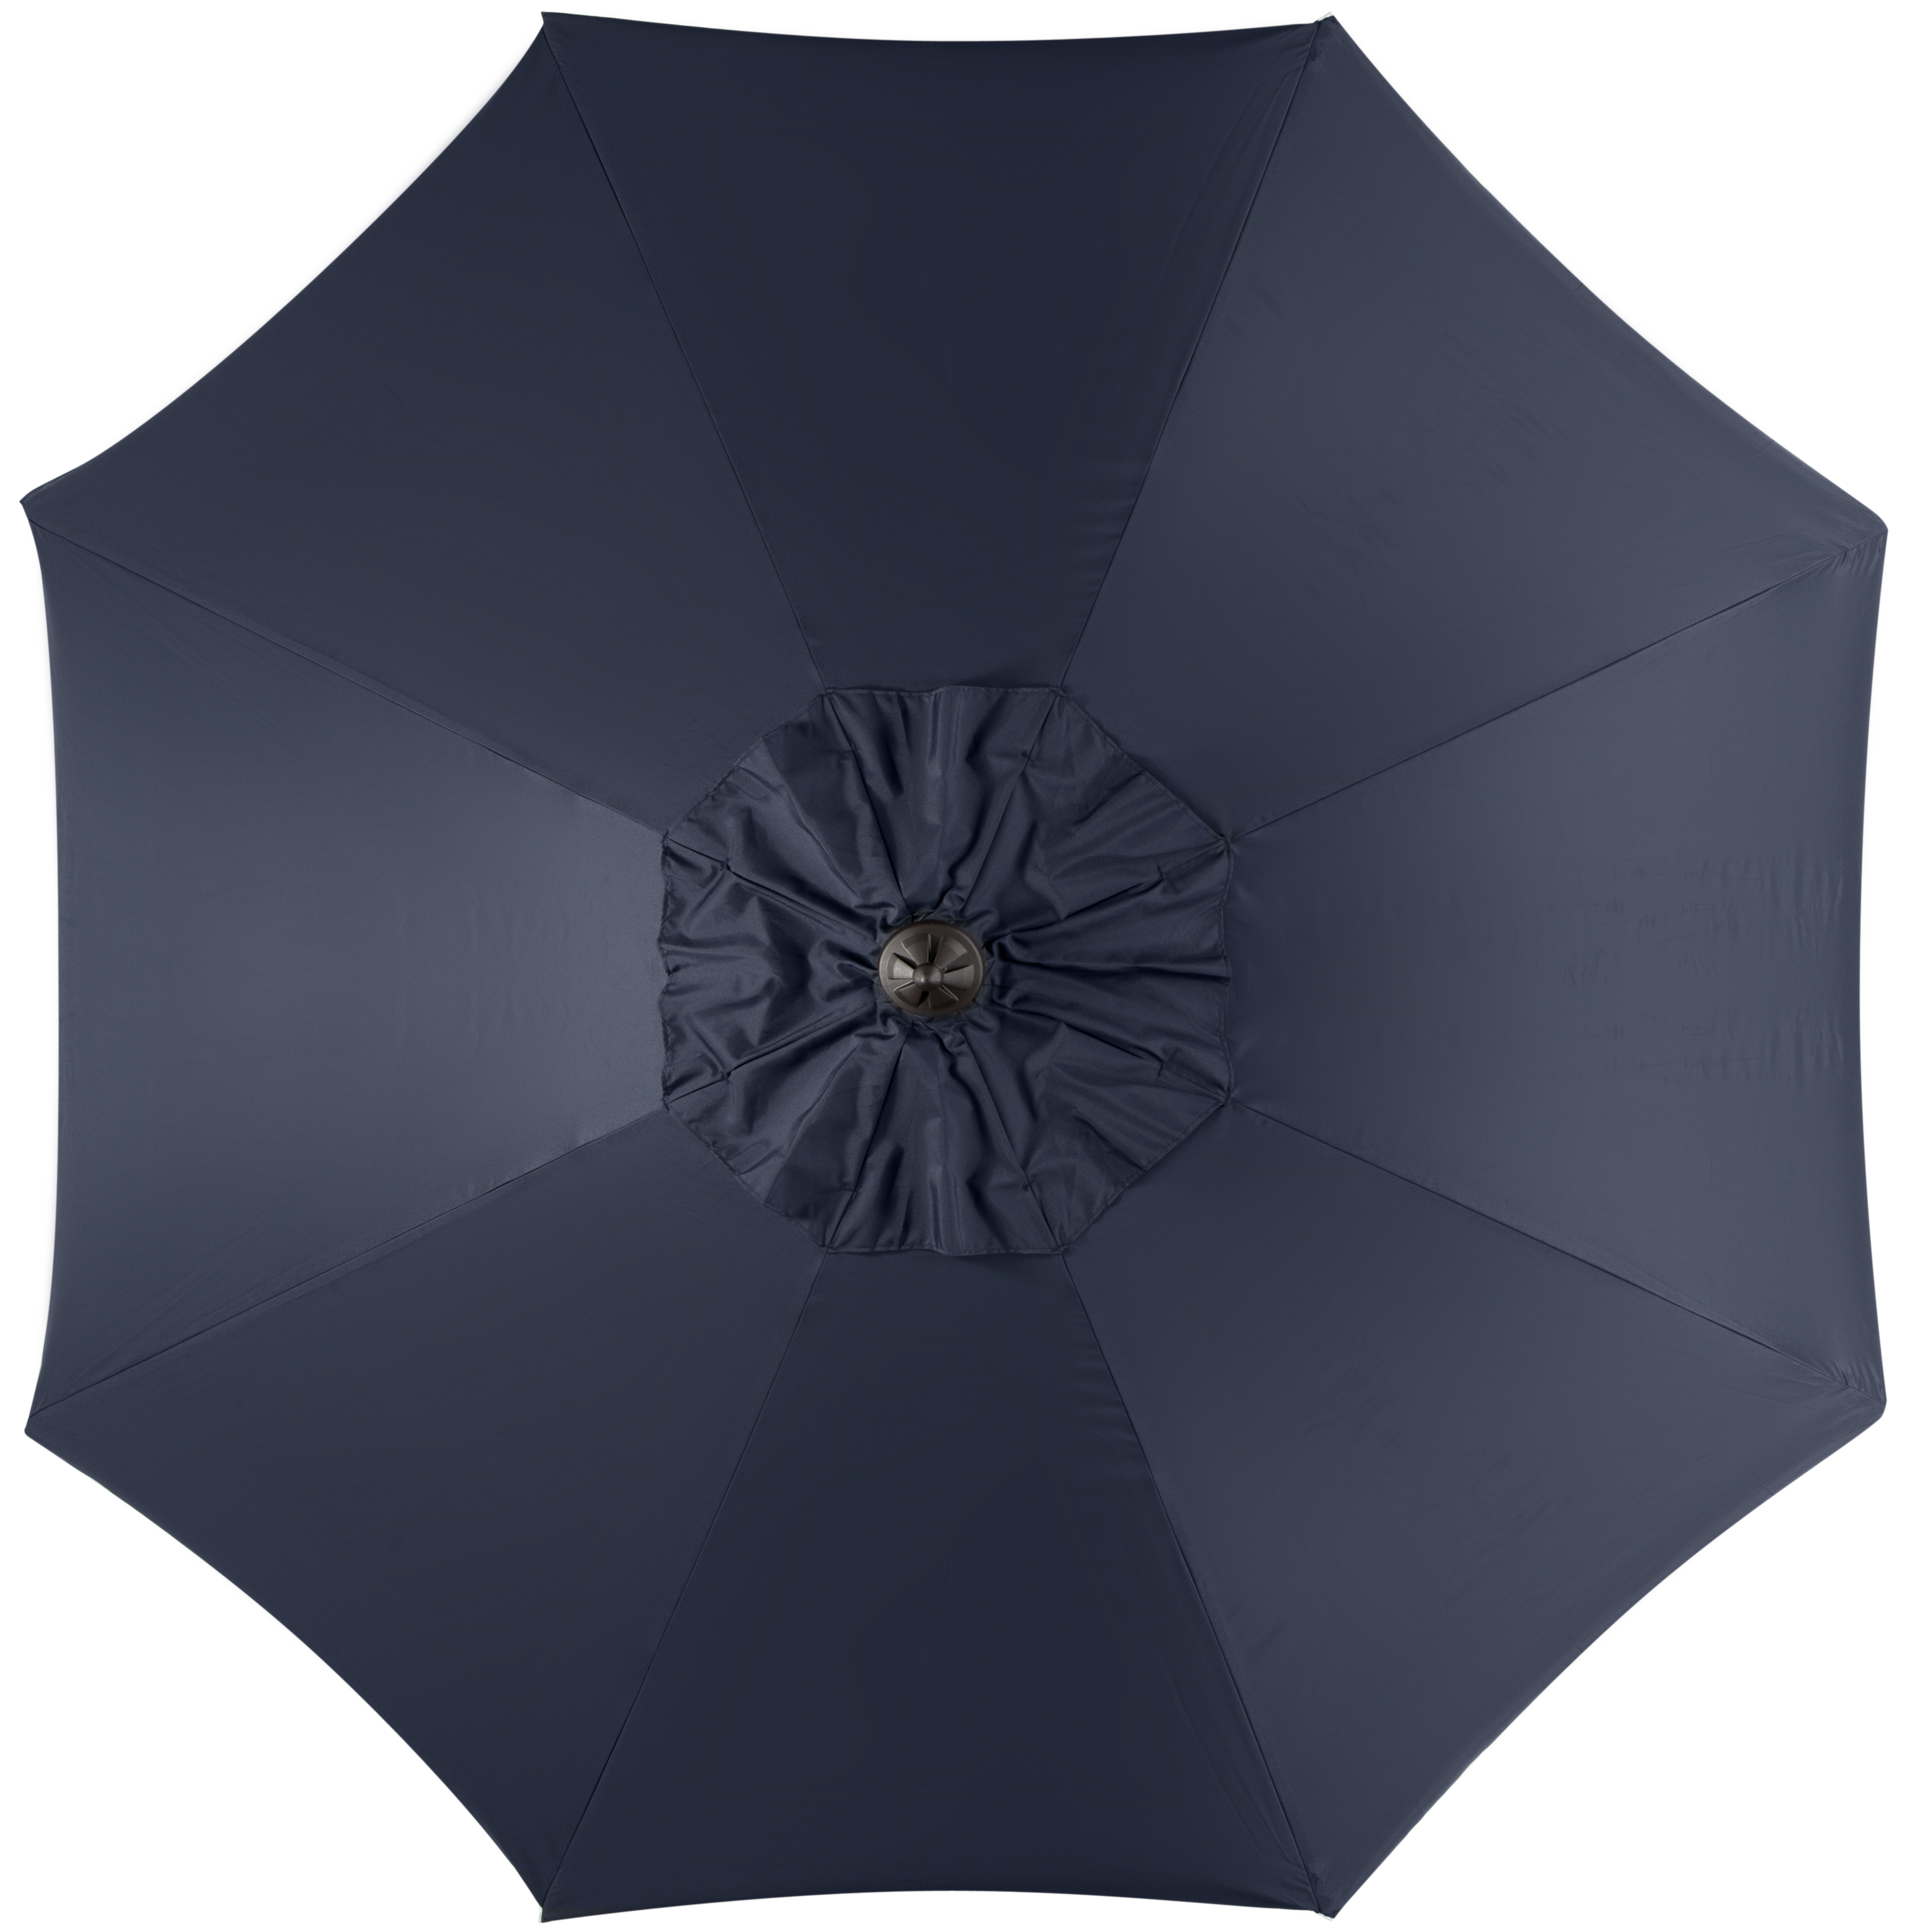 Venice Single Scallop 9Ft Crank Outdoor Push Button Tilt Umbrella - Navy/White - Arlo Home - Image 2